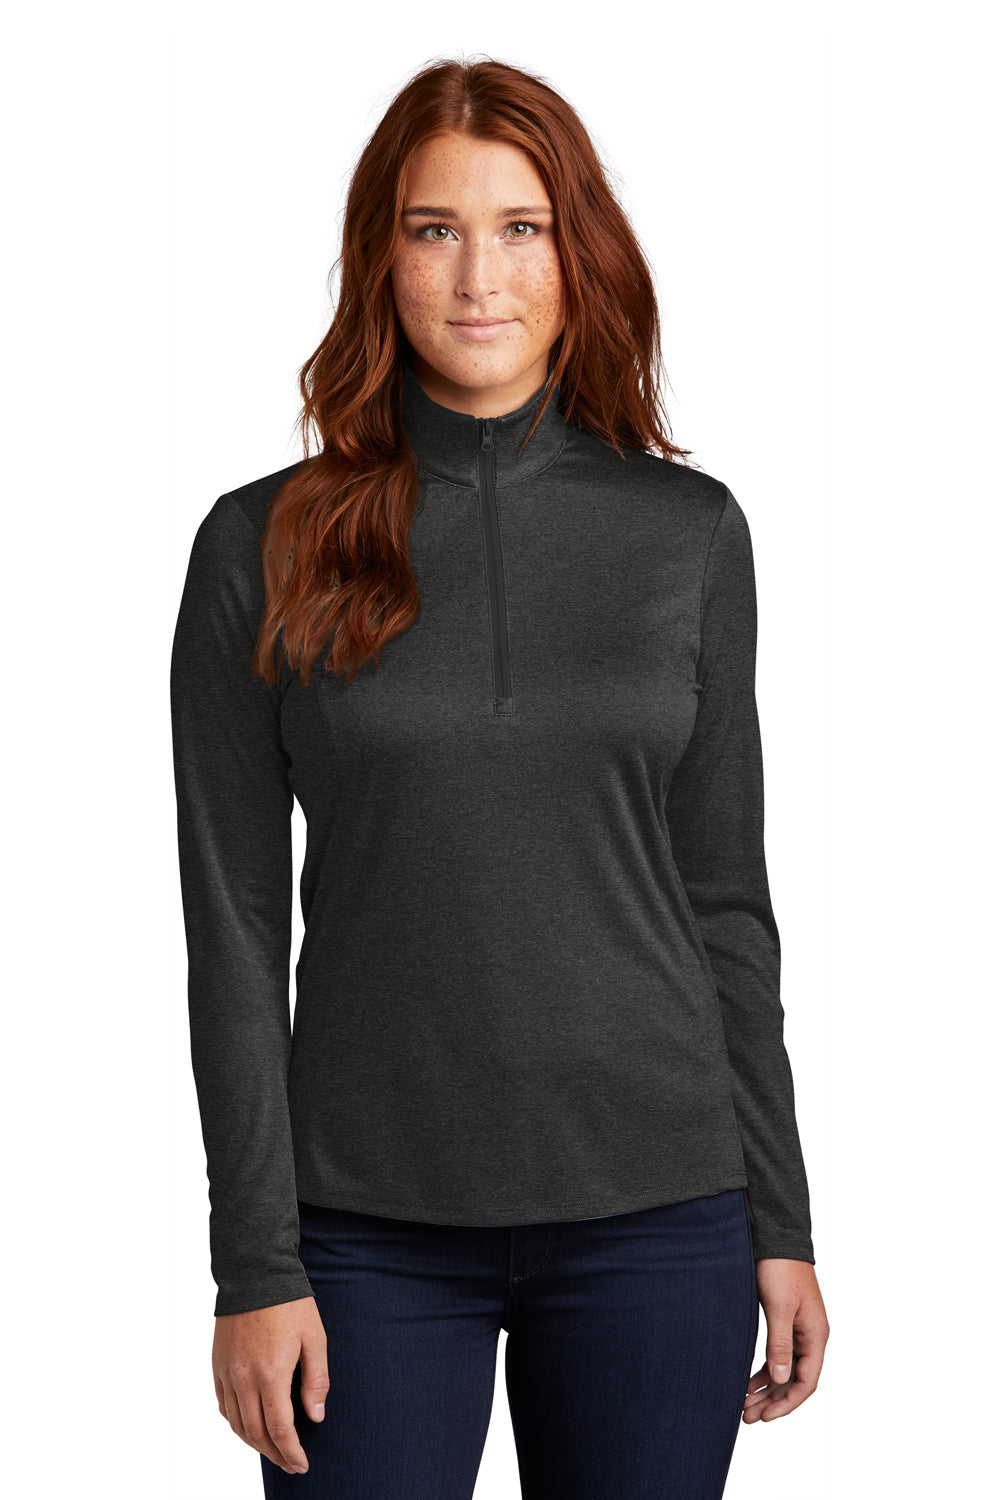 Sport-Tek Womens Endeavor 1/4 Zip Sweatshirt Heather Black Front